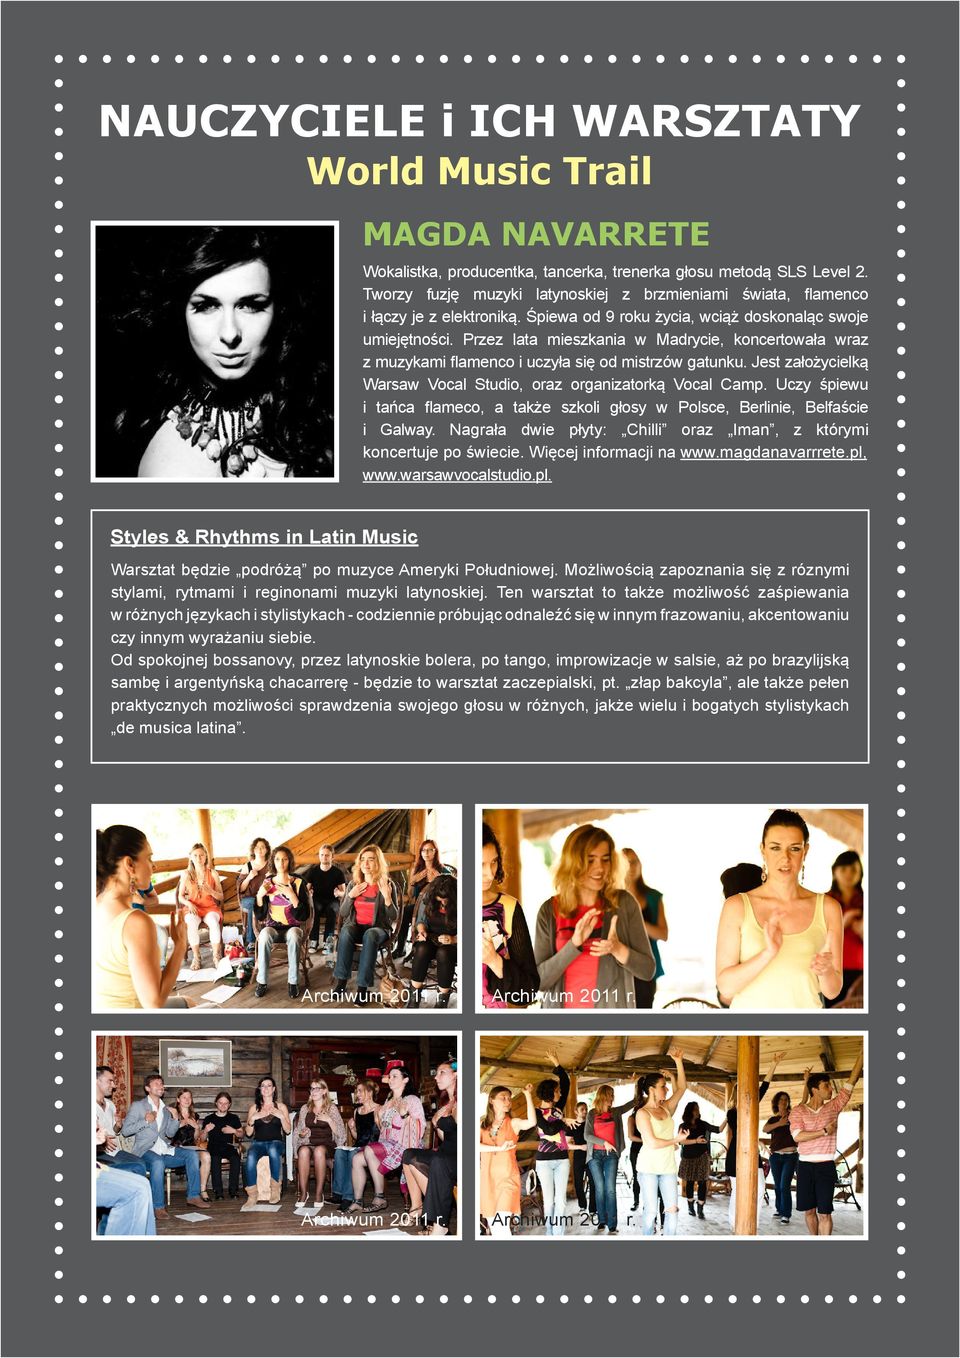 Przez lata mieszkania w Madrycie, koncertowała wraz z muzykami flamenco i uczyła się od mistrzów gatunku. Jest założycielką Warsaw Vocal Studio, oraz organizatorką Vocal Camp.